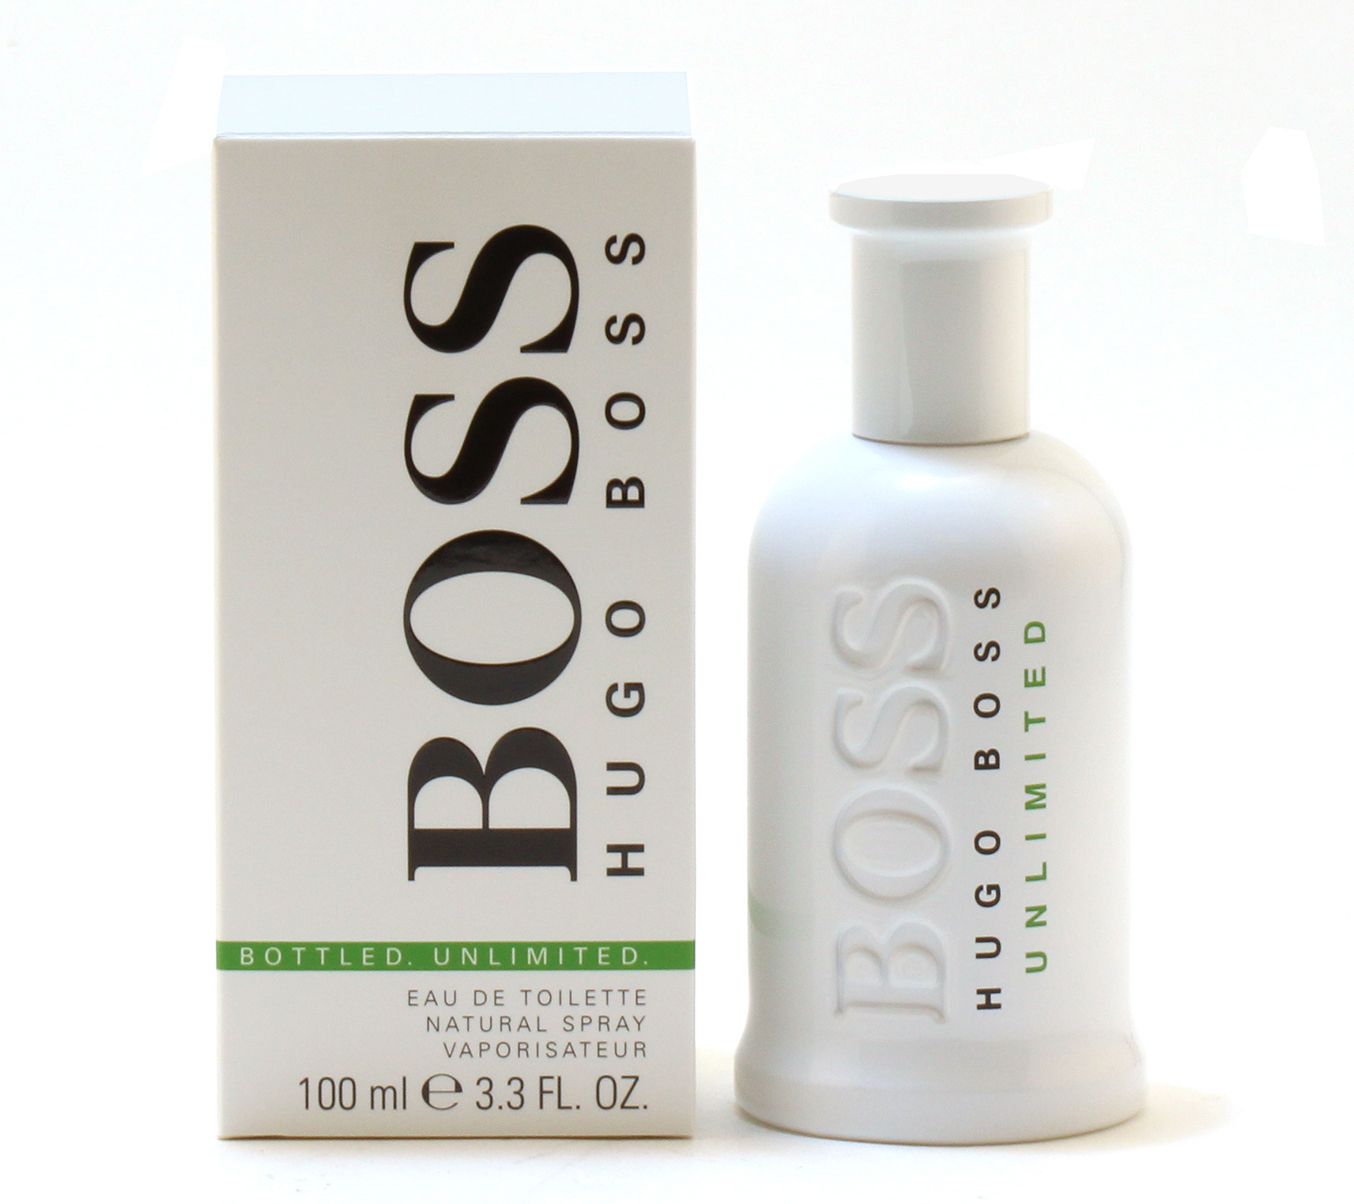 hugo boss boss bottled unlimited 100ml